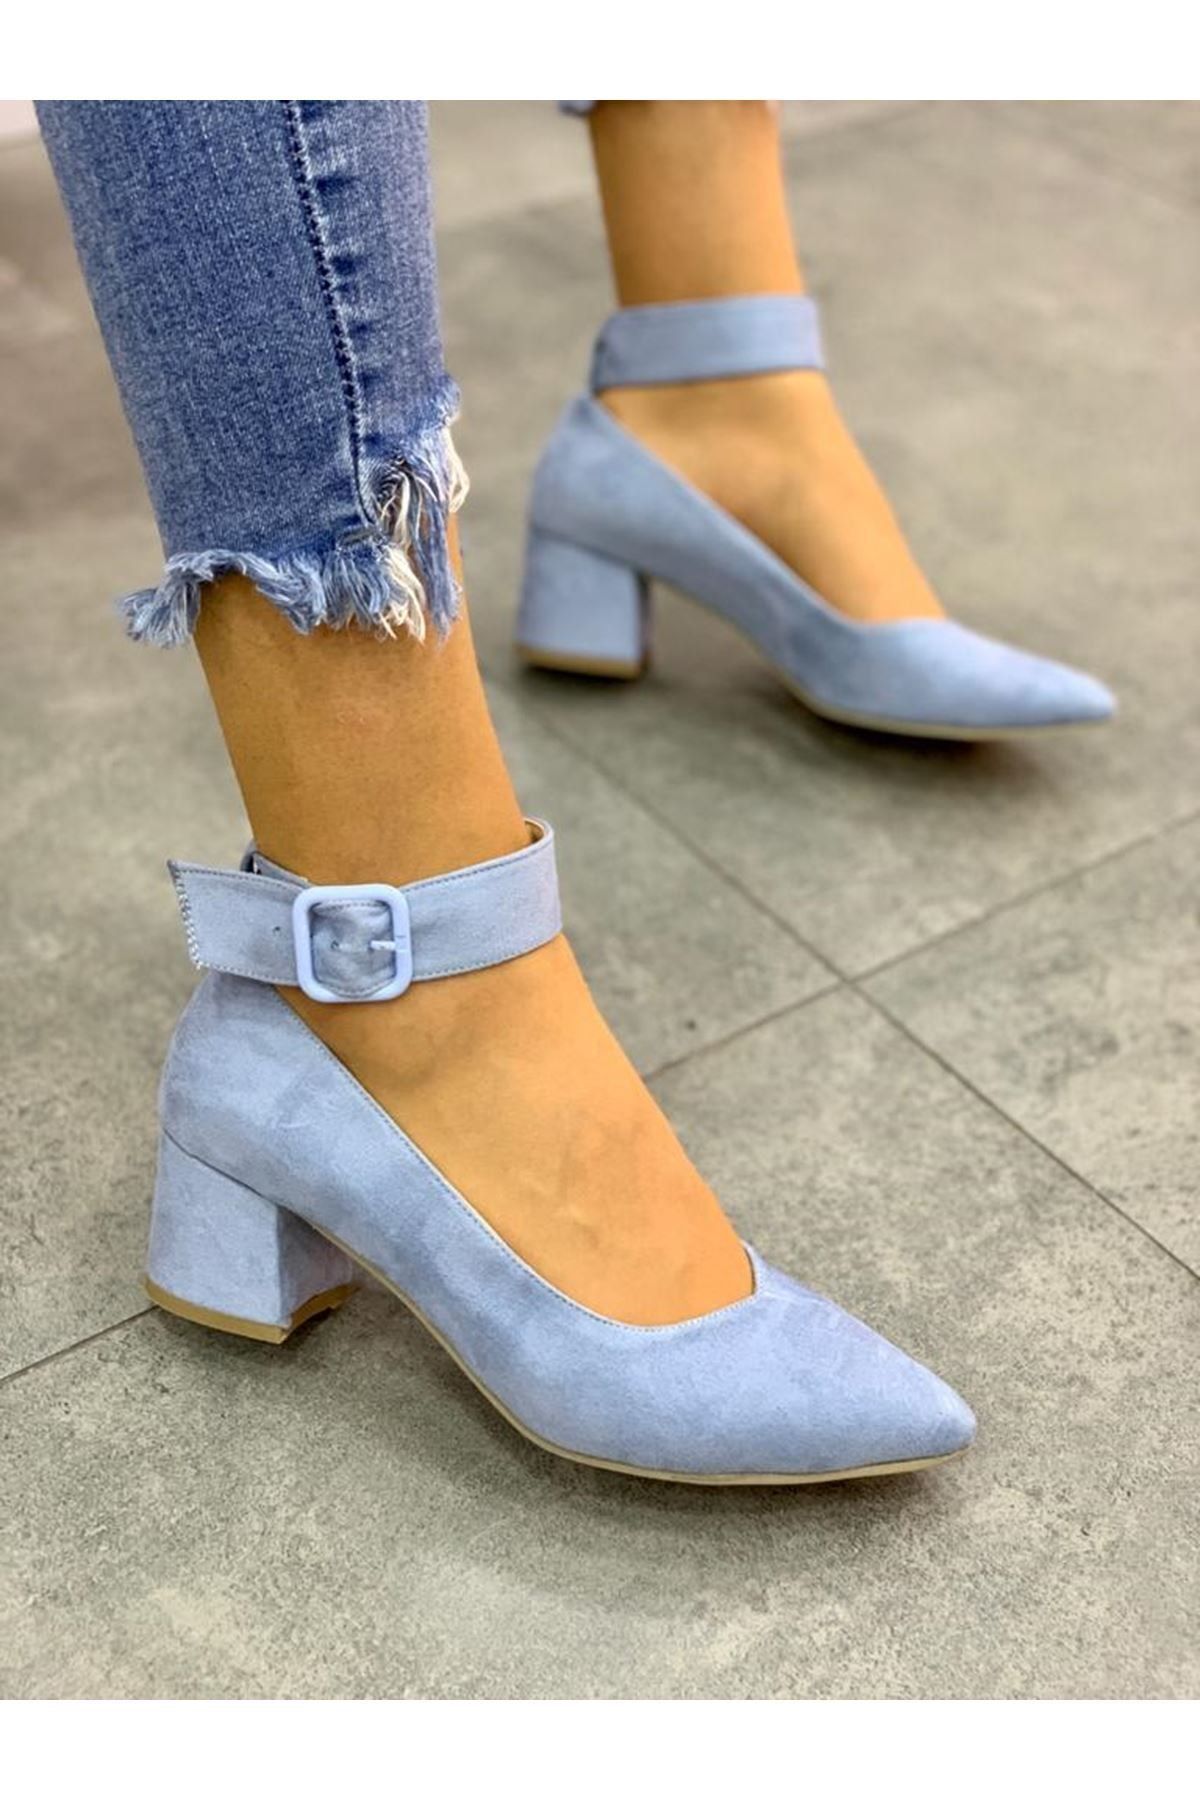 LAL SHOES & BAGS Bilekten Kemer Detaylı Kadın Topuklu Ayakkabı-s. Bebe Mavi